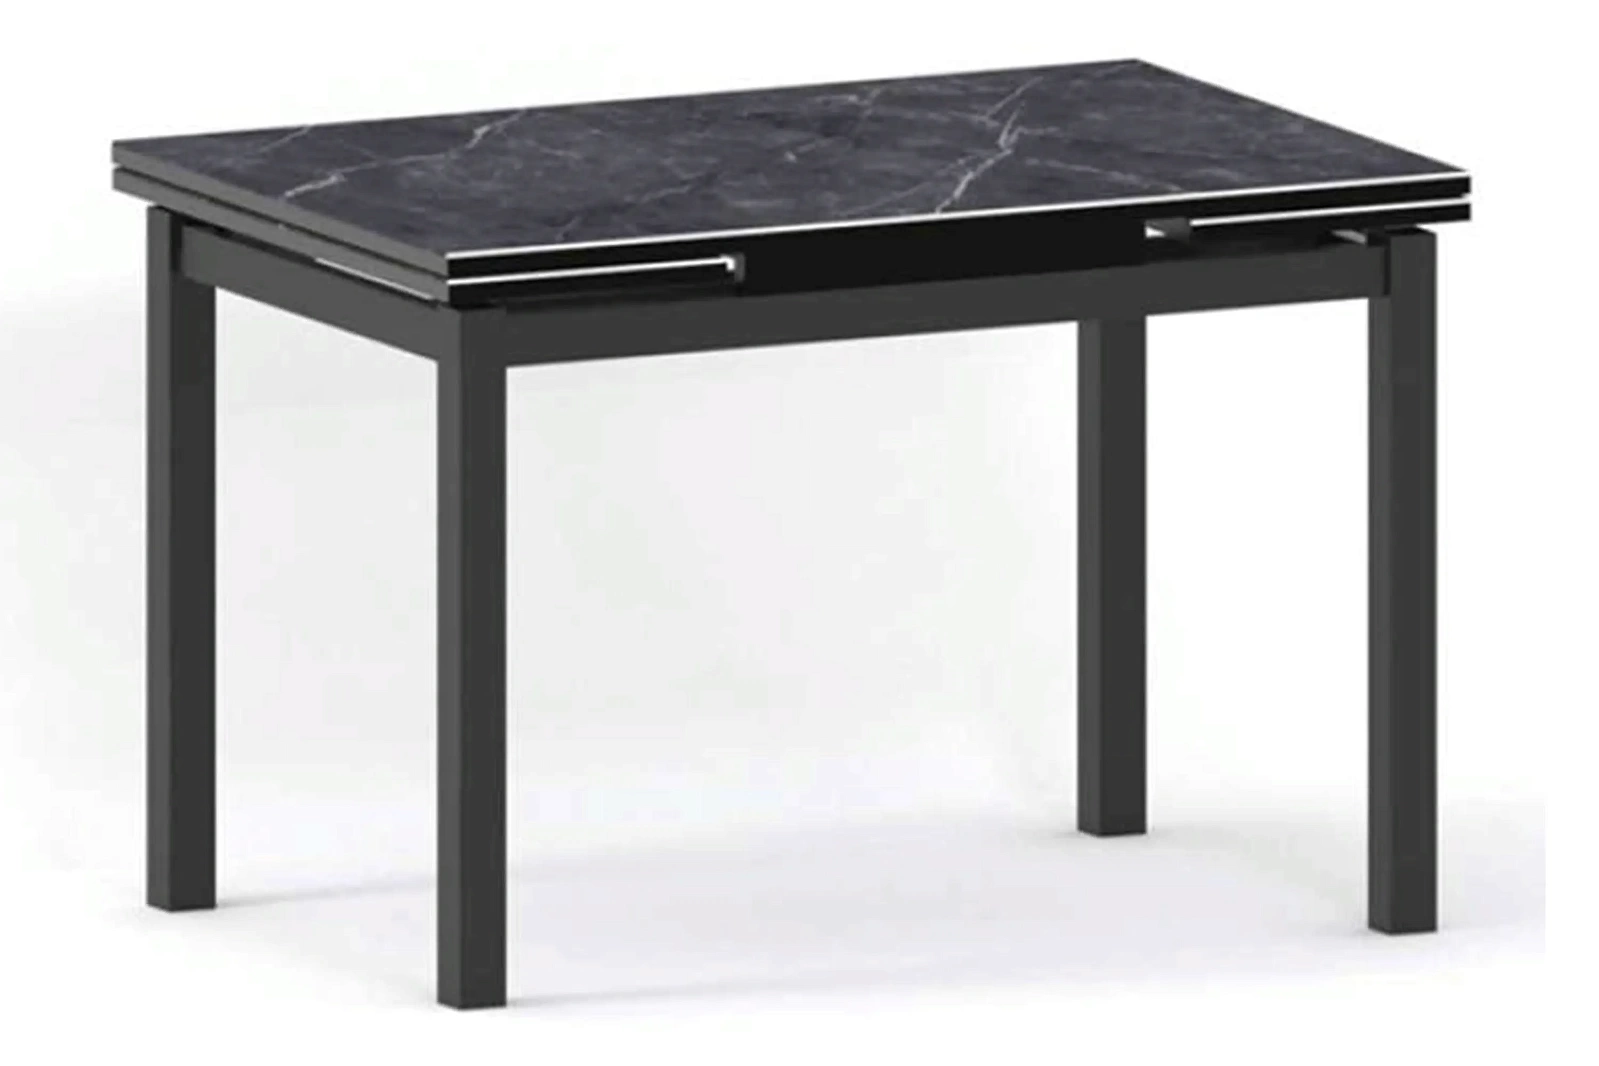 ДАЛАСИ-2 стол раскладной 120/180 см (черная керамика)